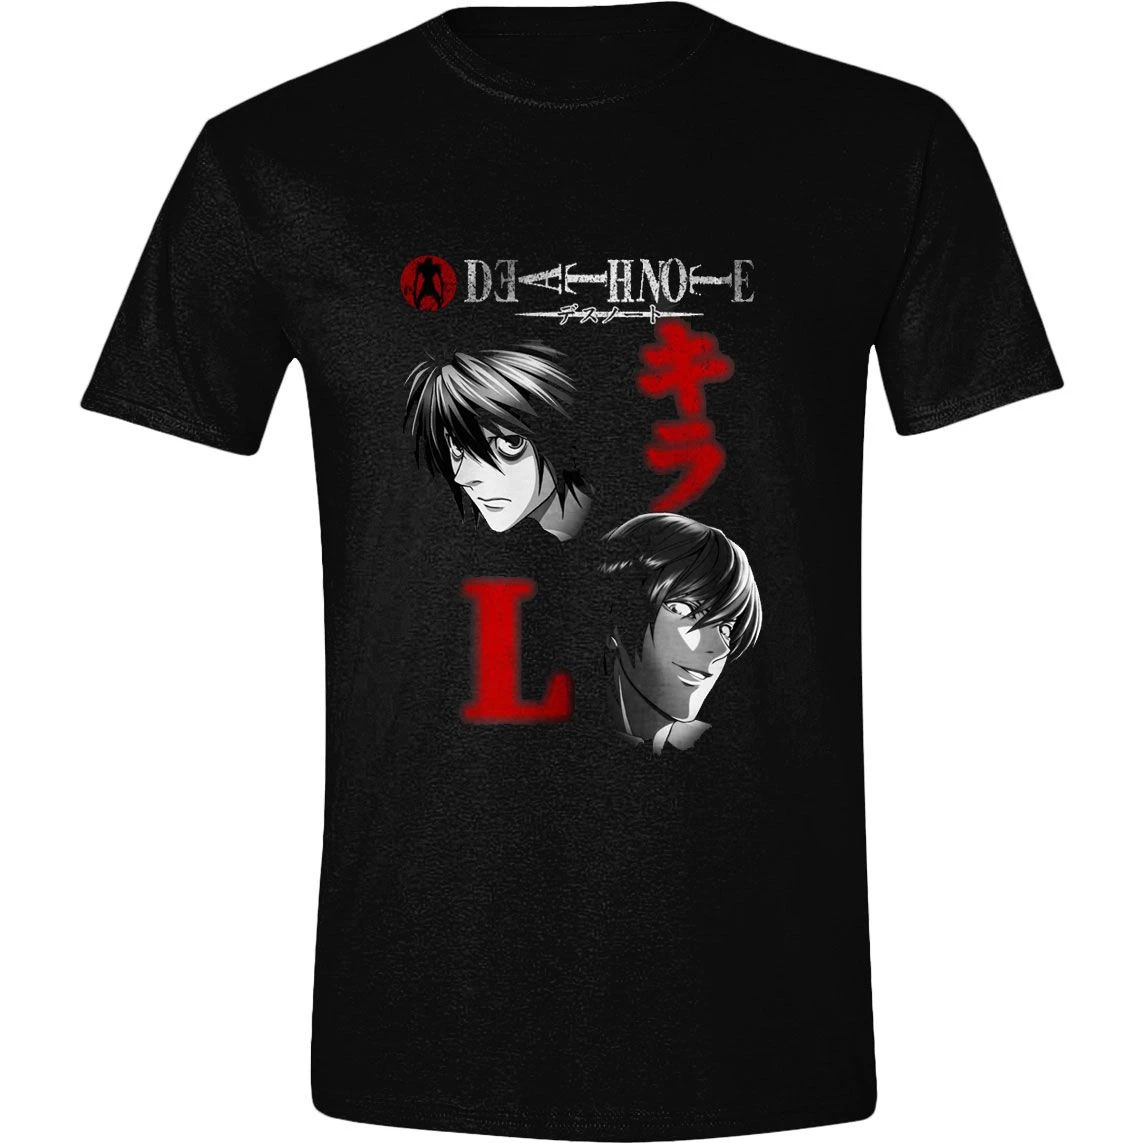 Death Note T-Shirt Written Name Size XL PCMerch